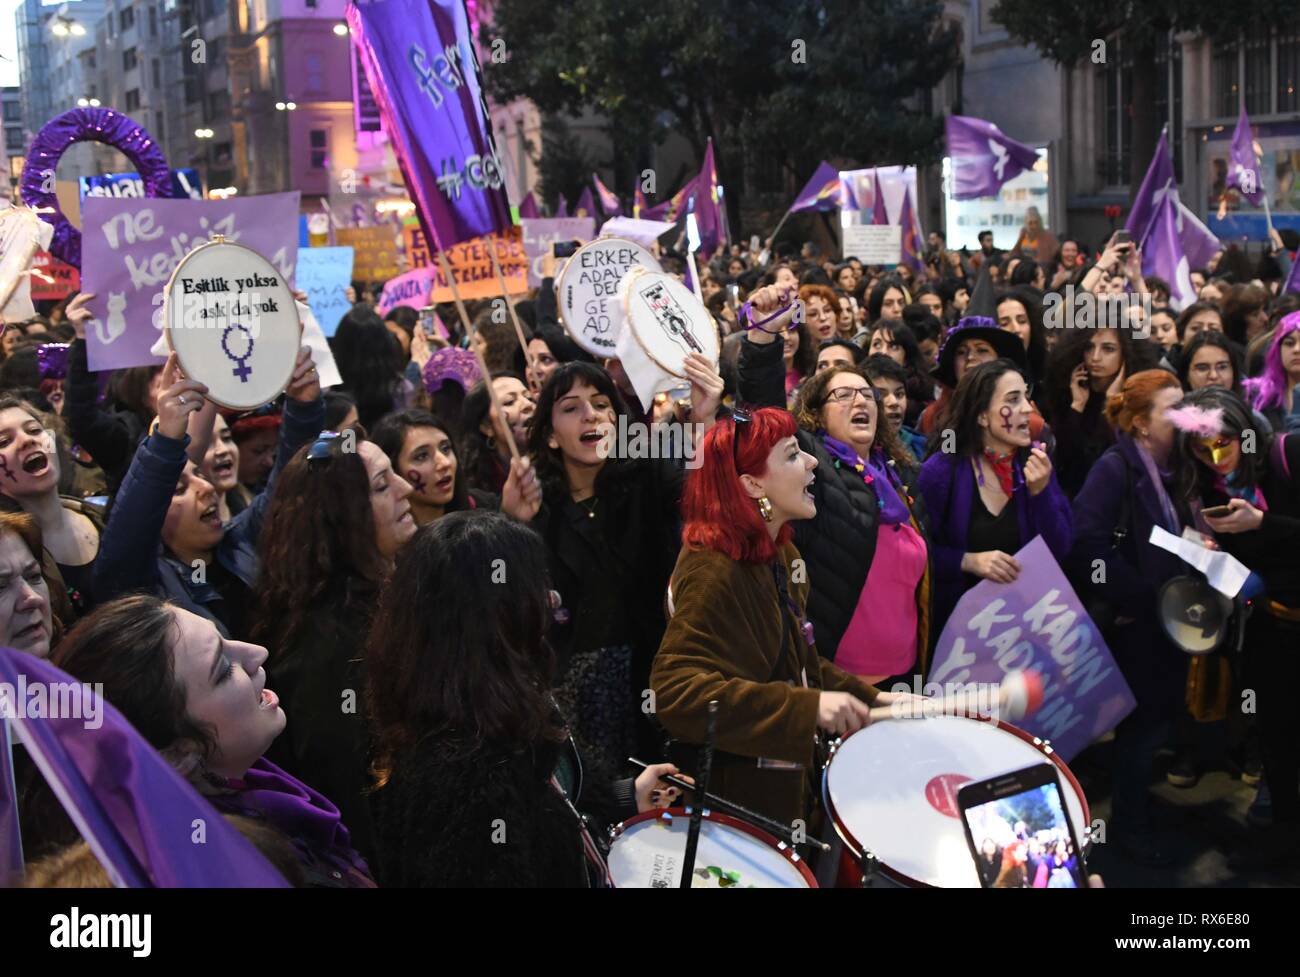 Estambul, Turquía. 8 de Mar, 2019. Las mujeres tomar parte en una protesta contra la violencia machista en la calle Istiklal de Estambul, Turquía, el 8 de marzo de 2019. La policía turca dispararon gases lacrimógenos y balas de goma para dispersar a las mujeres que protestaban contra la violencia masculina en el centro de Estambul el viernes por la noche. Crédito: Xu Suhui/Xinhua/Alamy Live News Foto de stock